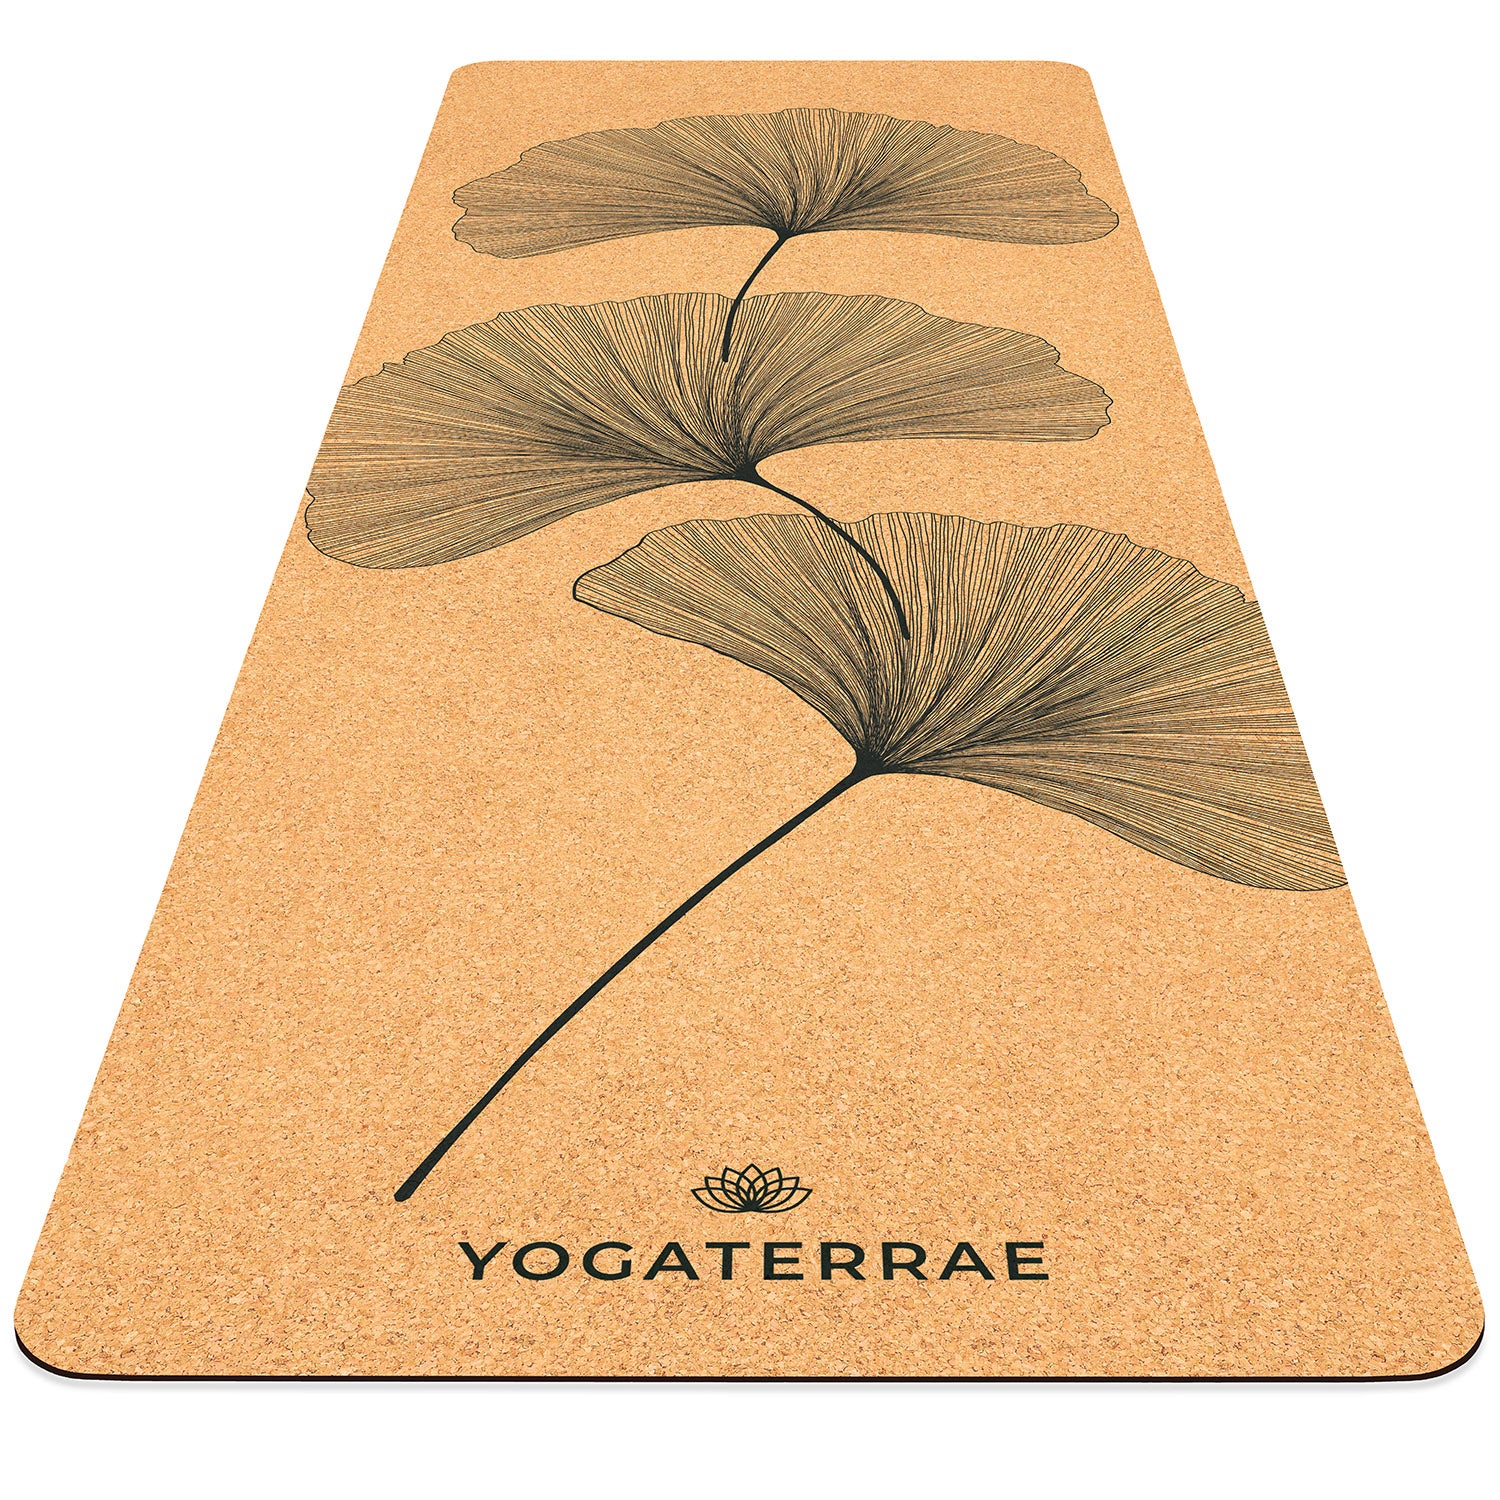 Tapis de yoga liège et caoutchouc naturels antidérapant écologique Ginkgos Yin Yang YOGATERRAE marque française